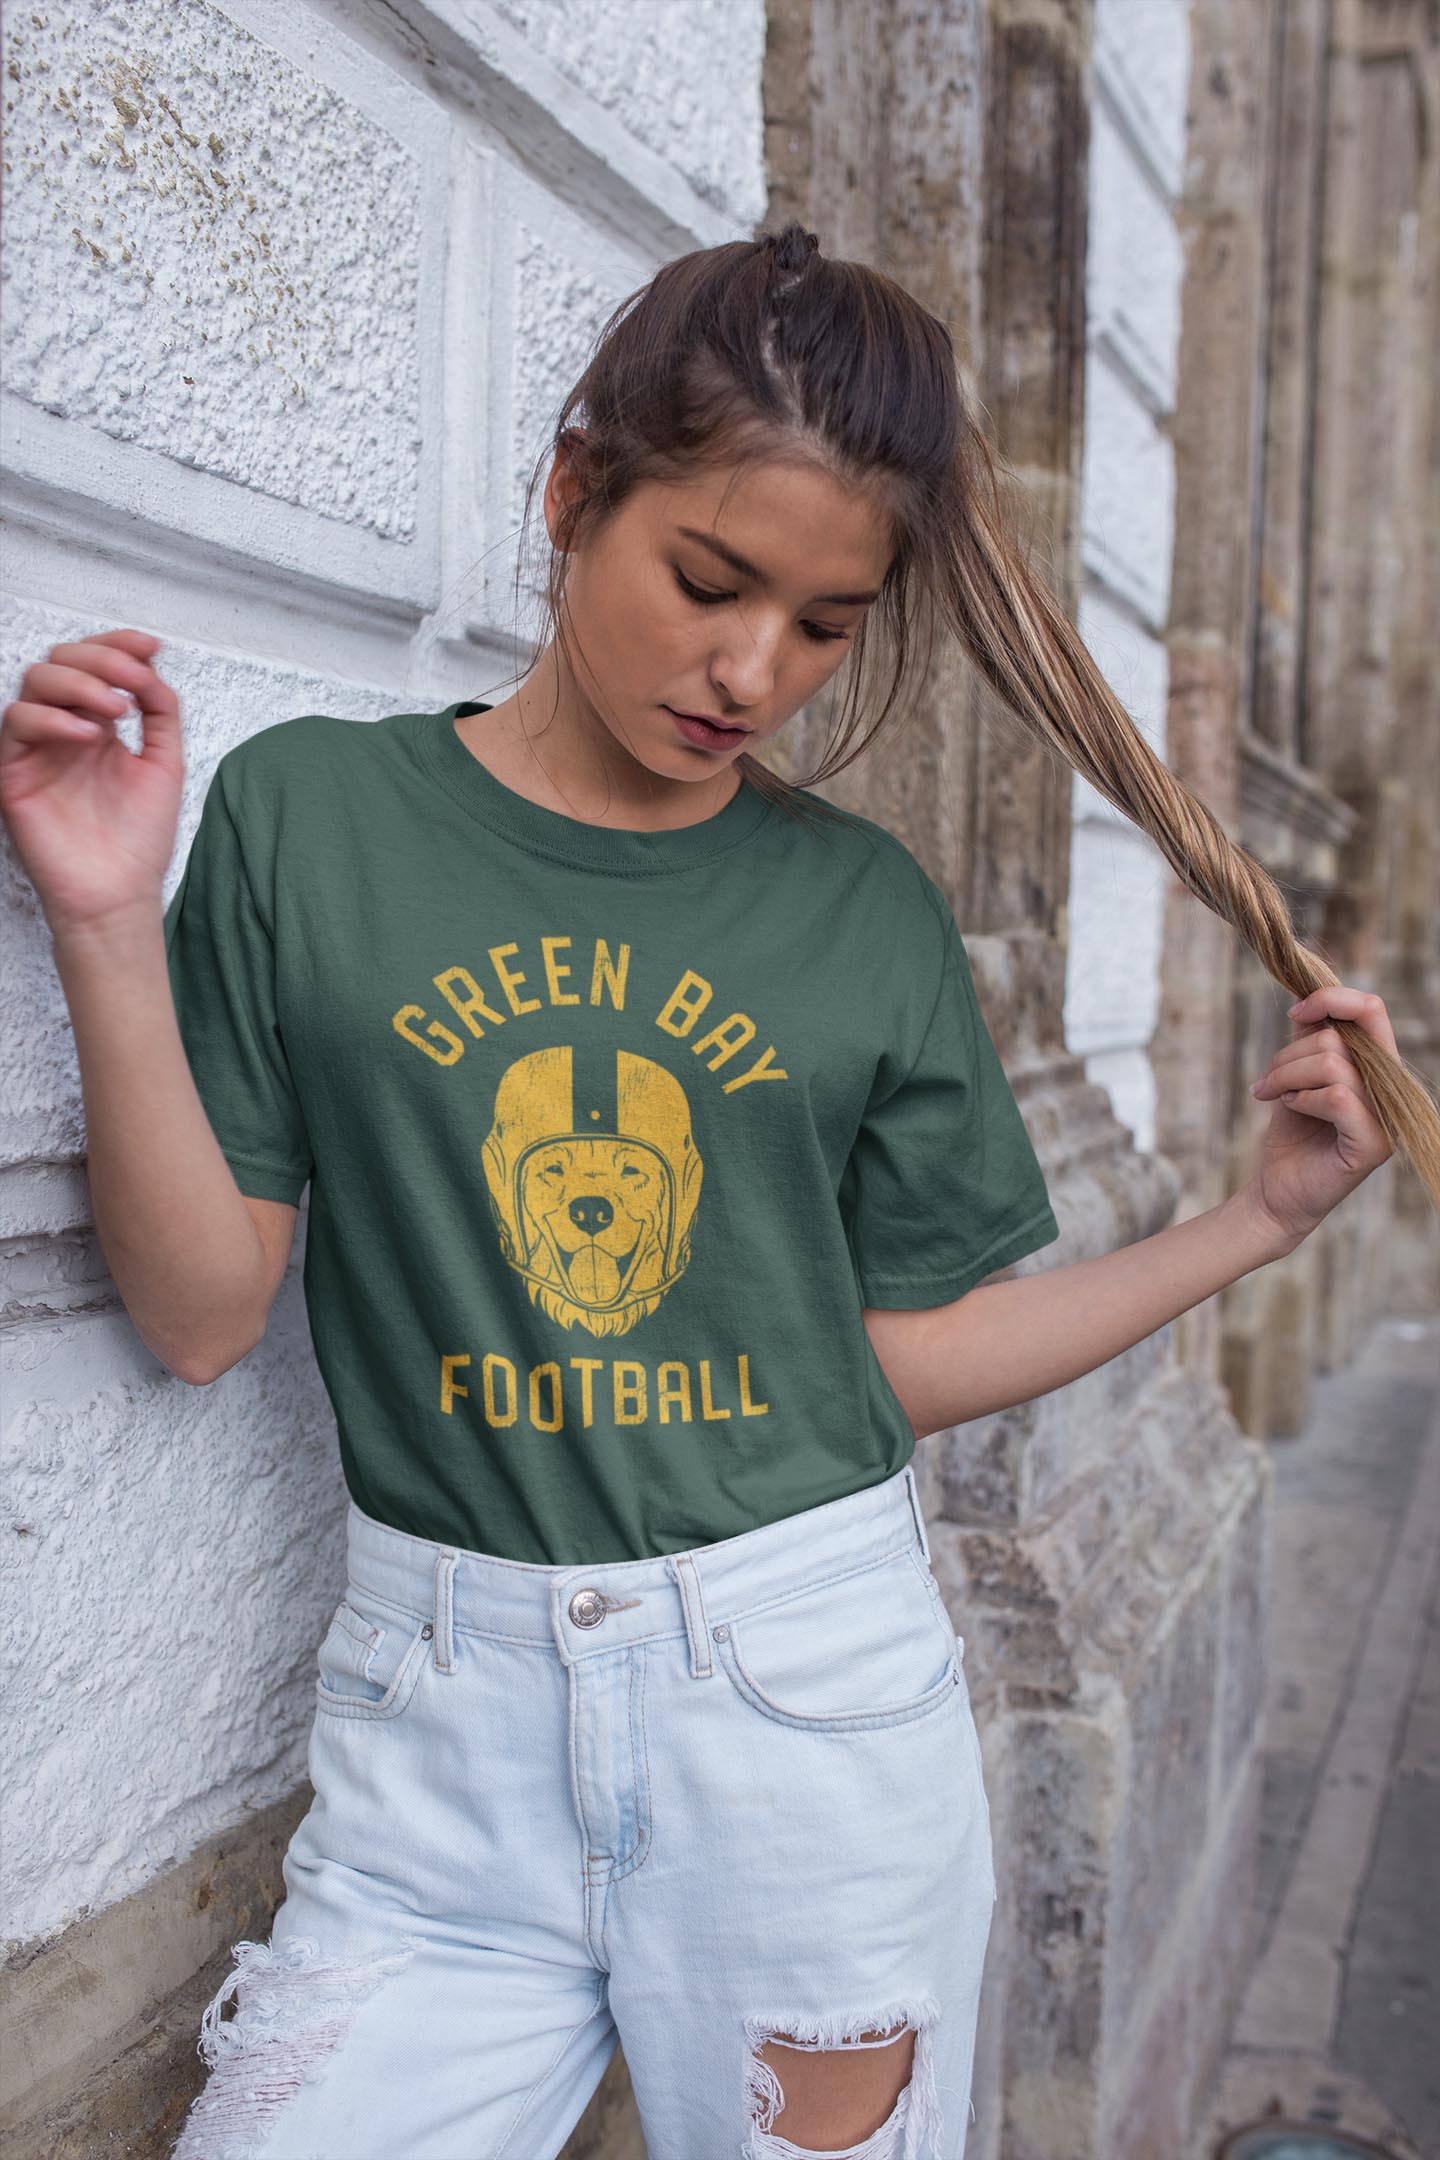 Green Bay Football Golden Retriever T-Shirt